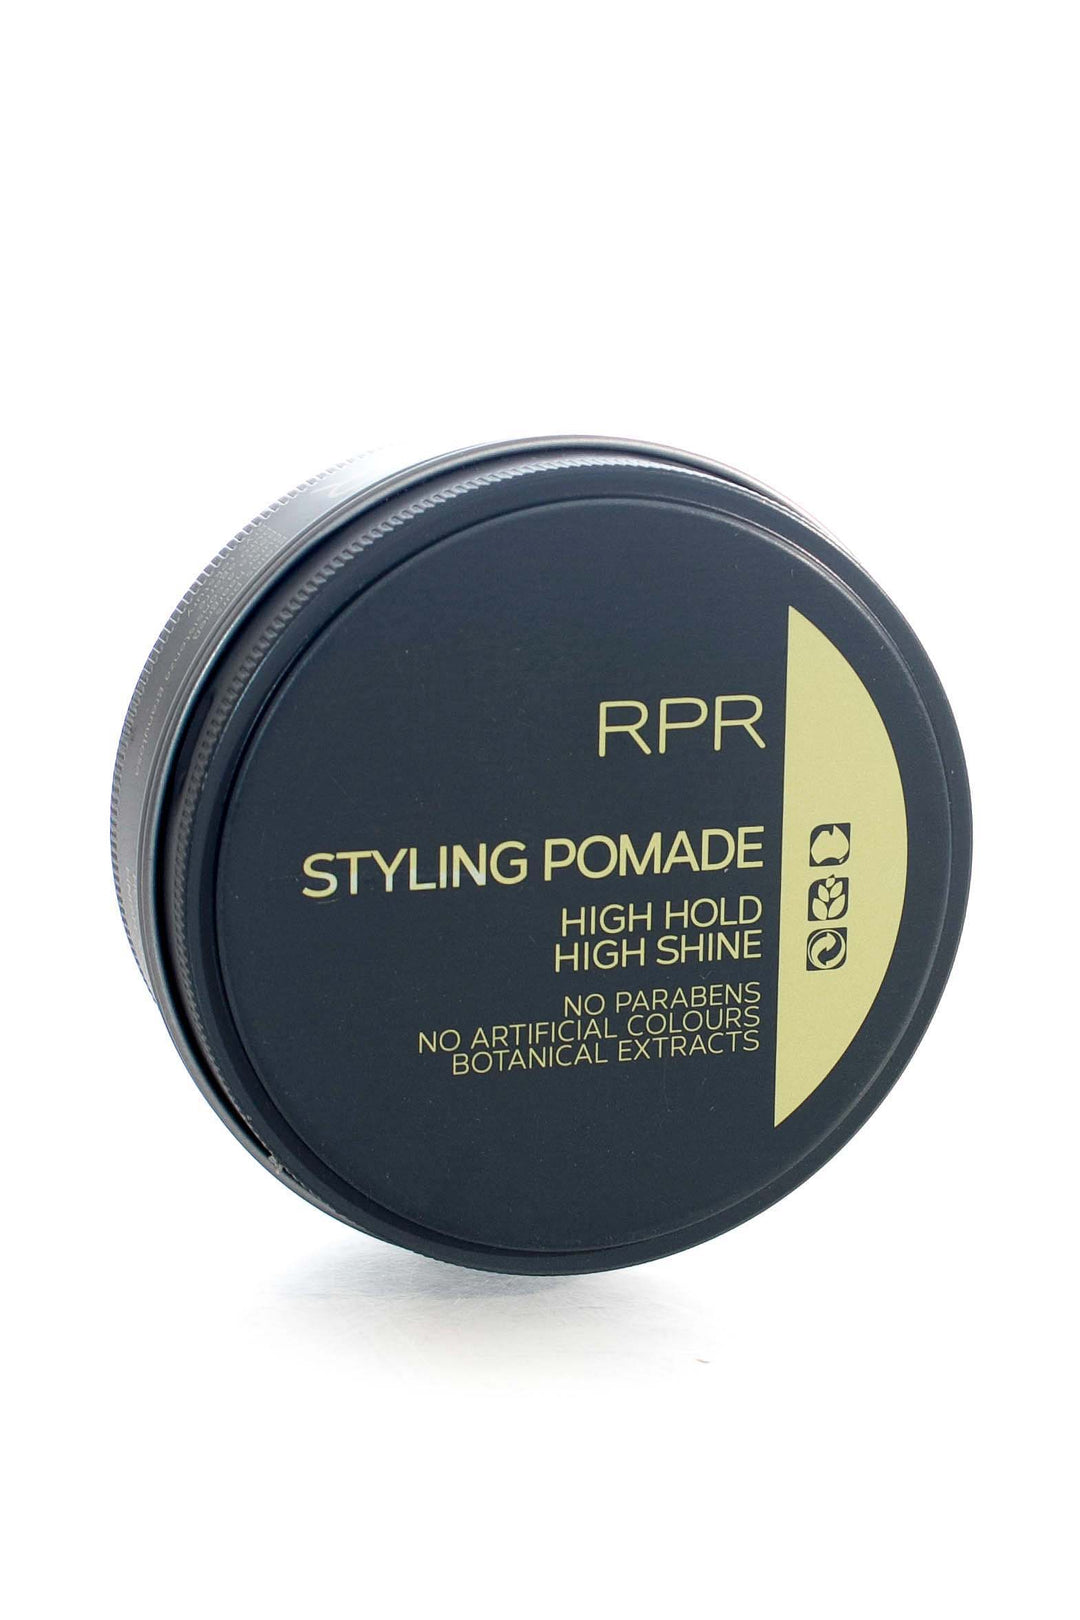 rpr-styling-pomade-90g